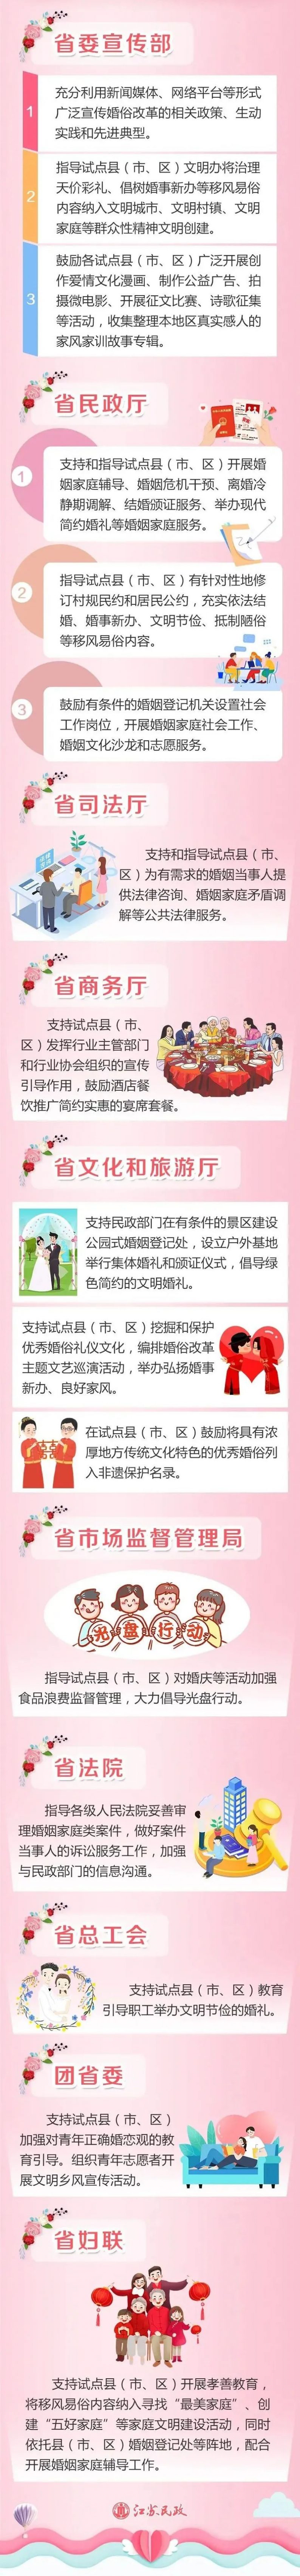 江苏10部门联合支持婚俗改革  第4张